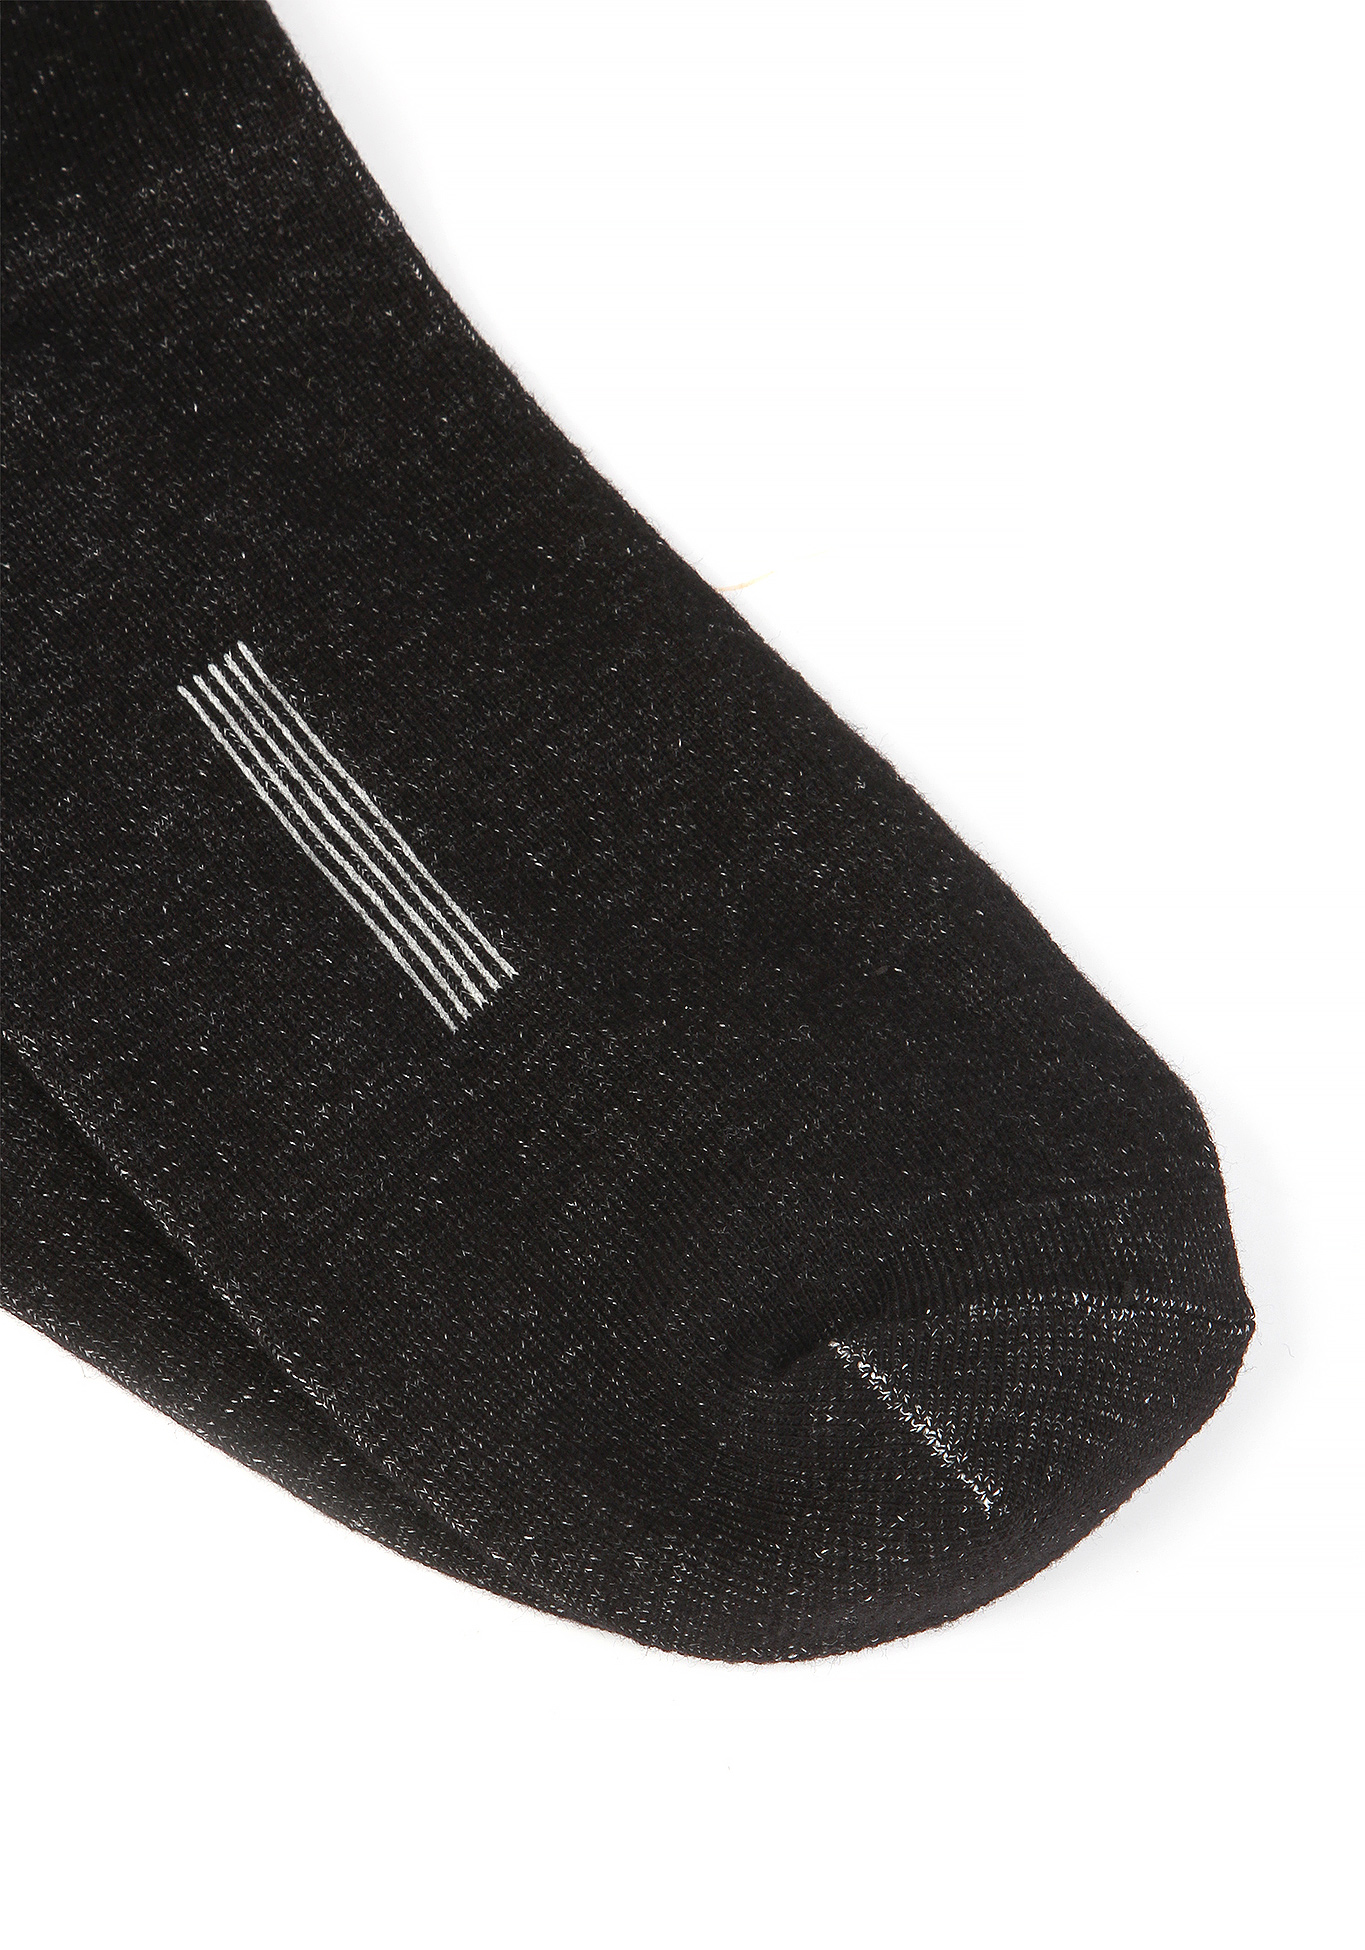 Носки с Медной нитью + бамбук Центр Доктор, цвет черный, размер 36-38 - фото 3